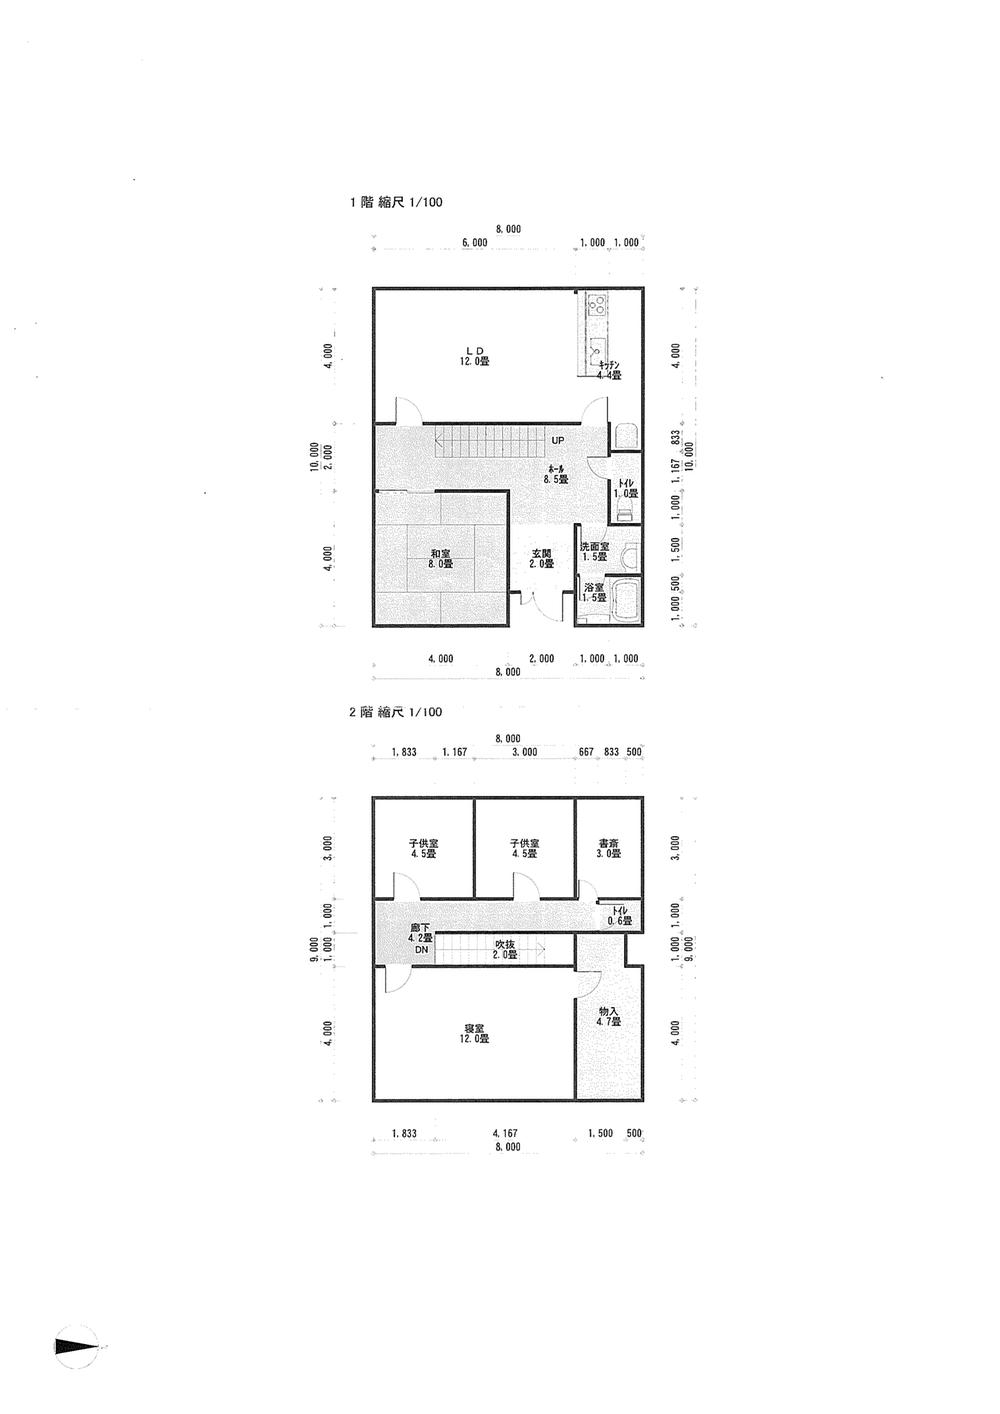 Floor plan. 28 million yen, 4LDK, Land area 81.42 sq m , Building area 146 sq m